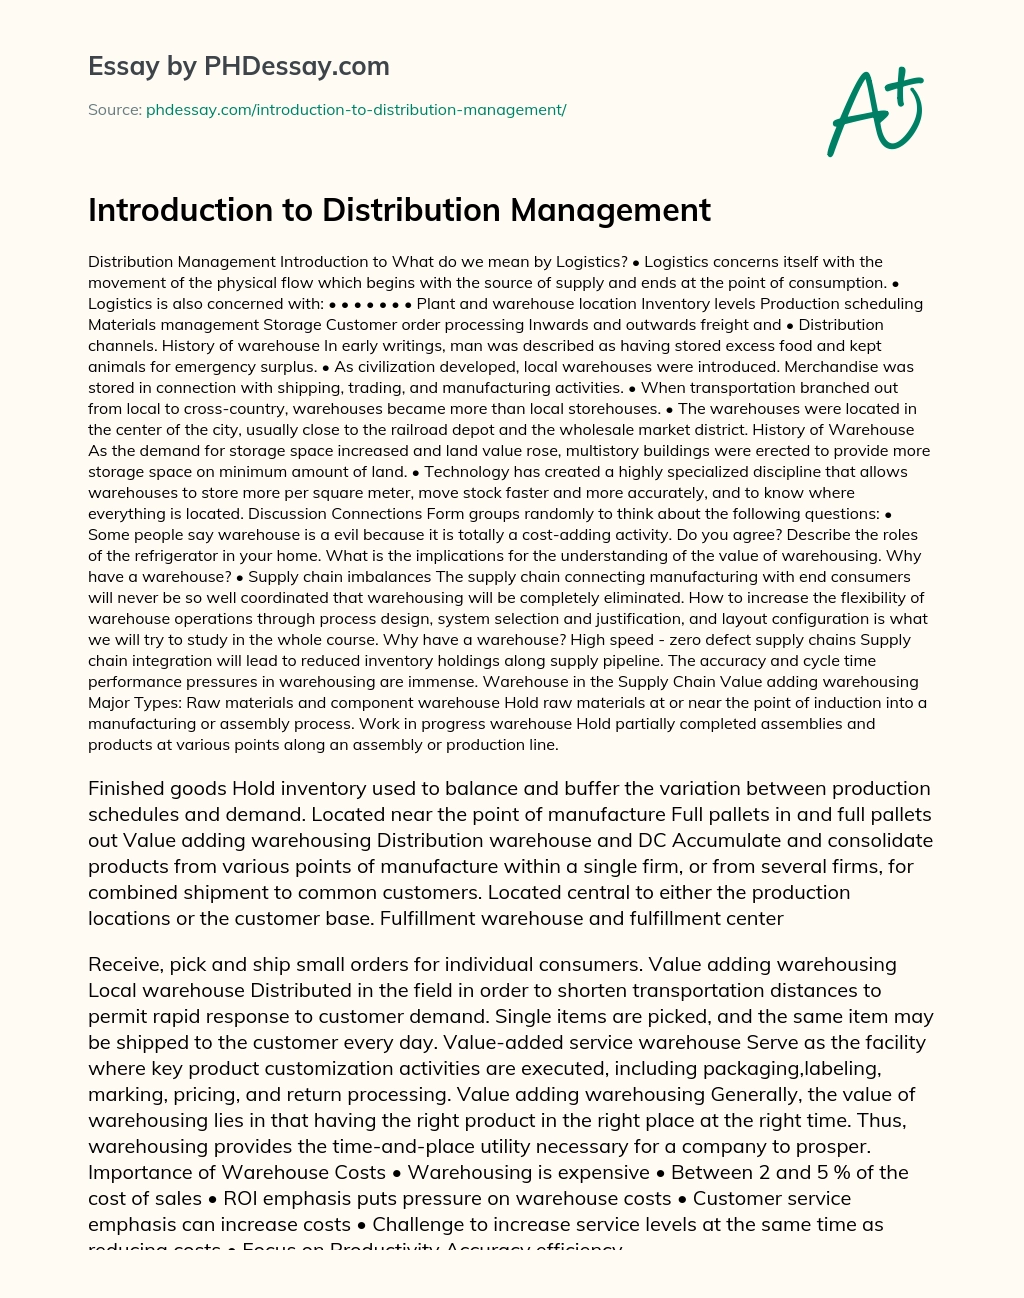 essay about distribution management